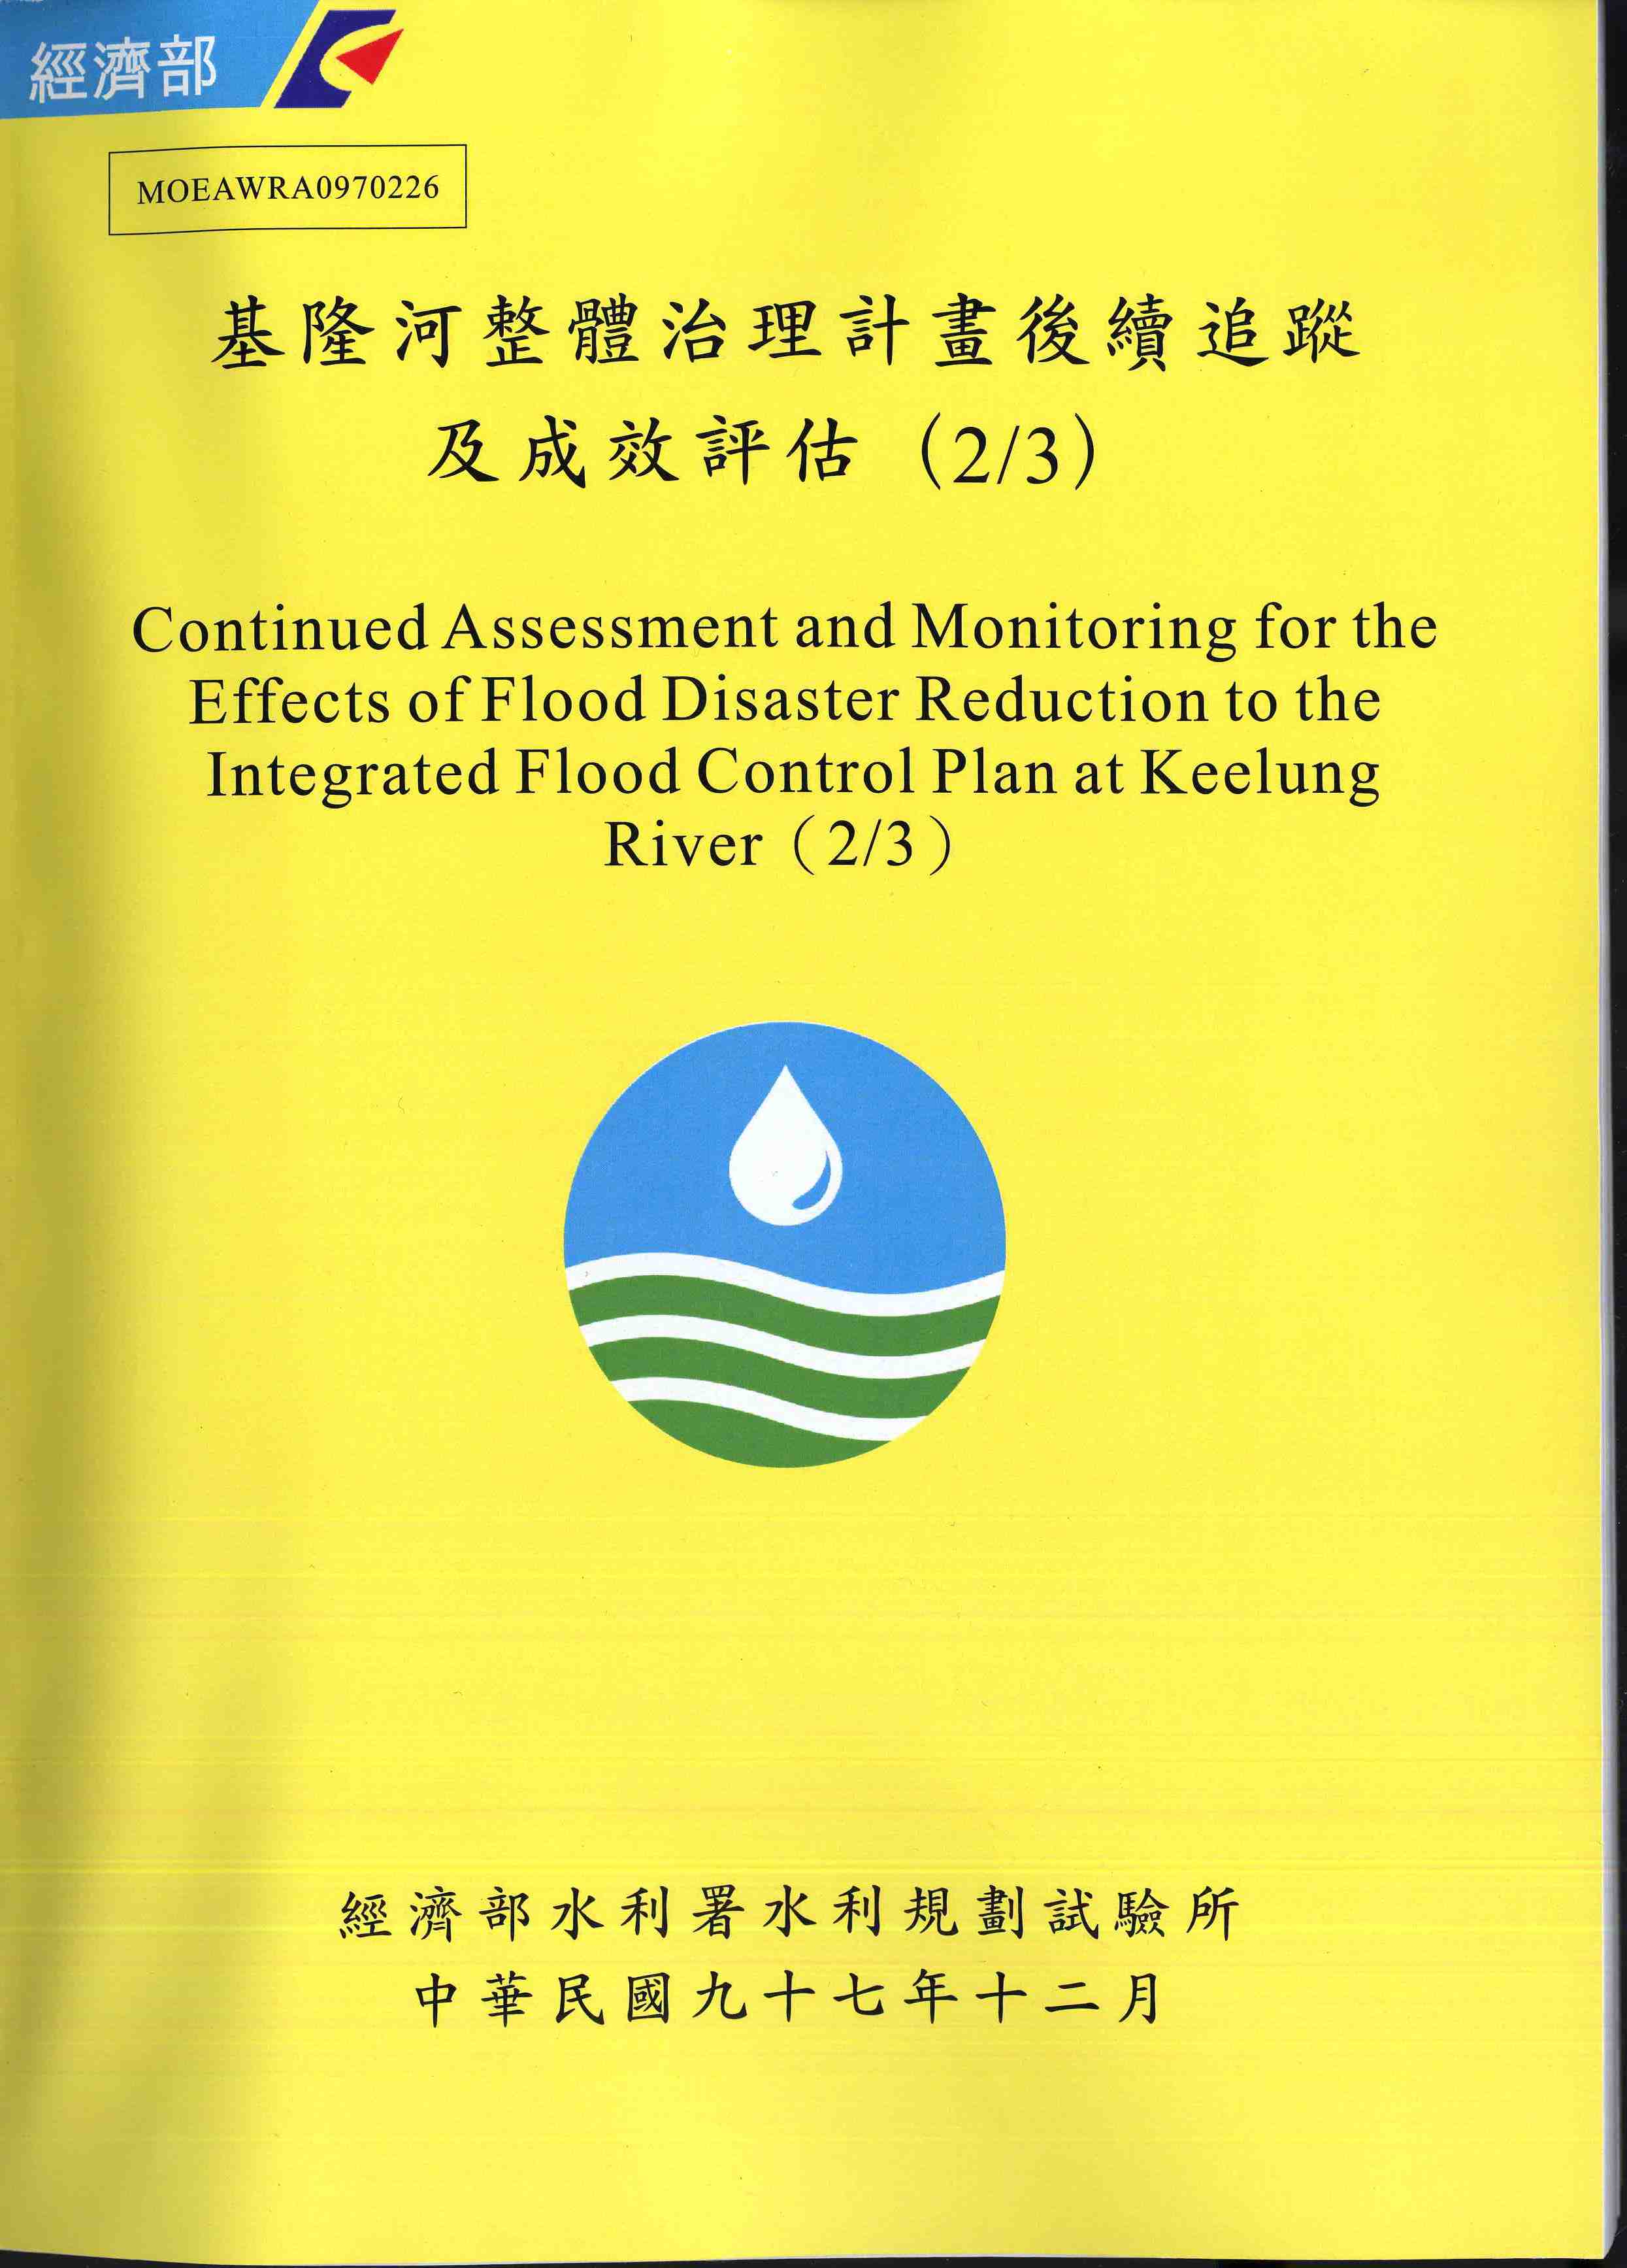 基隆河整體治理計畫後續追蹤及成效評估(2/3)